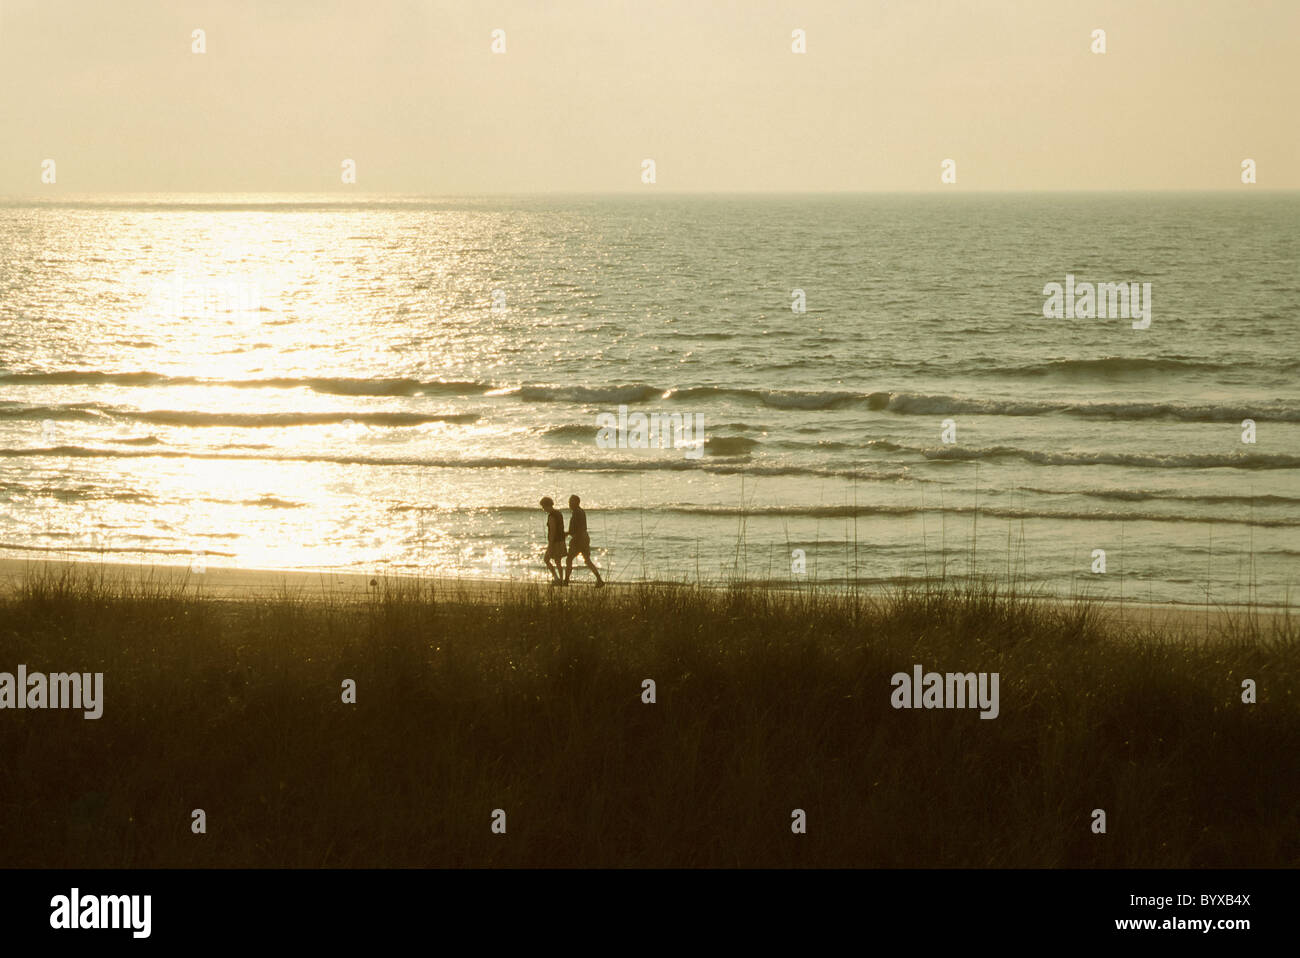 La promenade la plage à Amelia Island en Floride au lever du soleil Banque D'Images